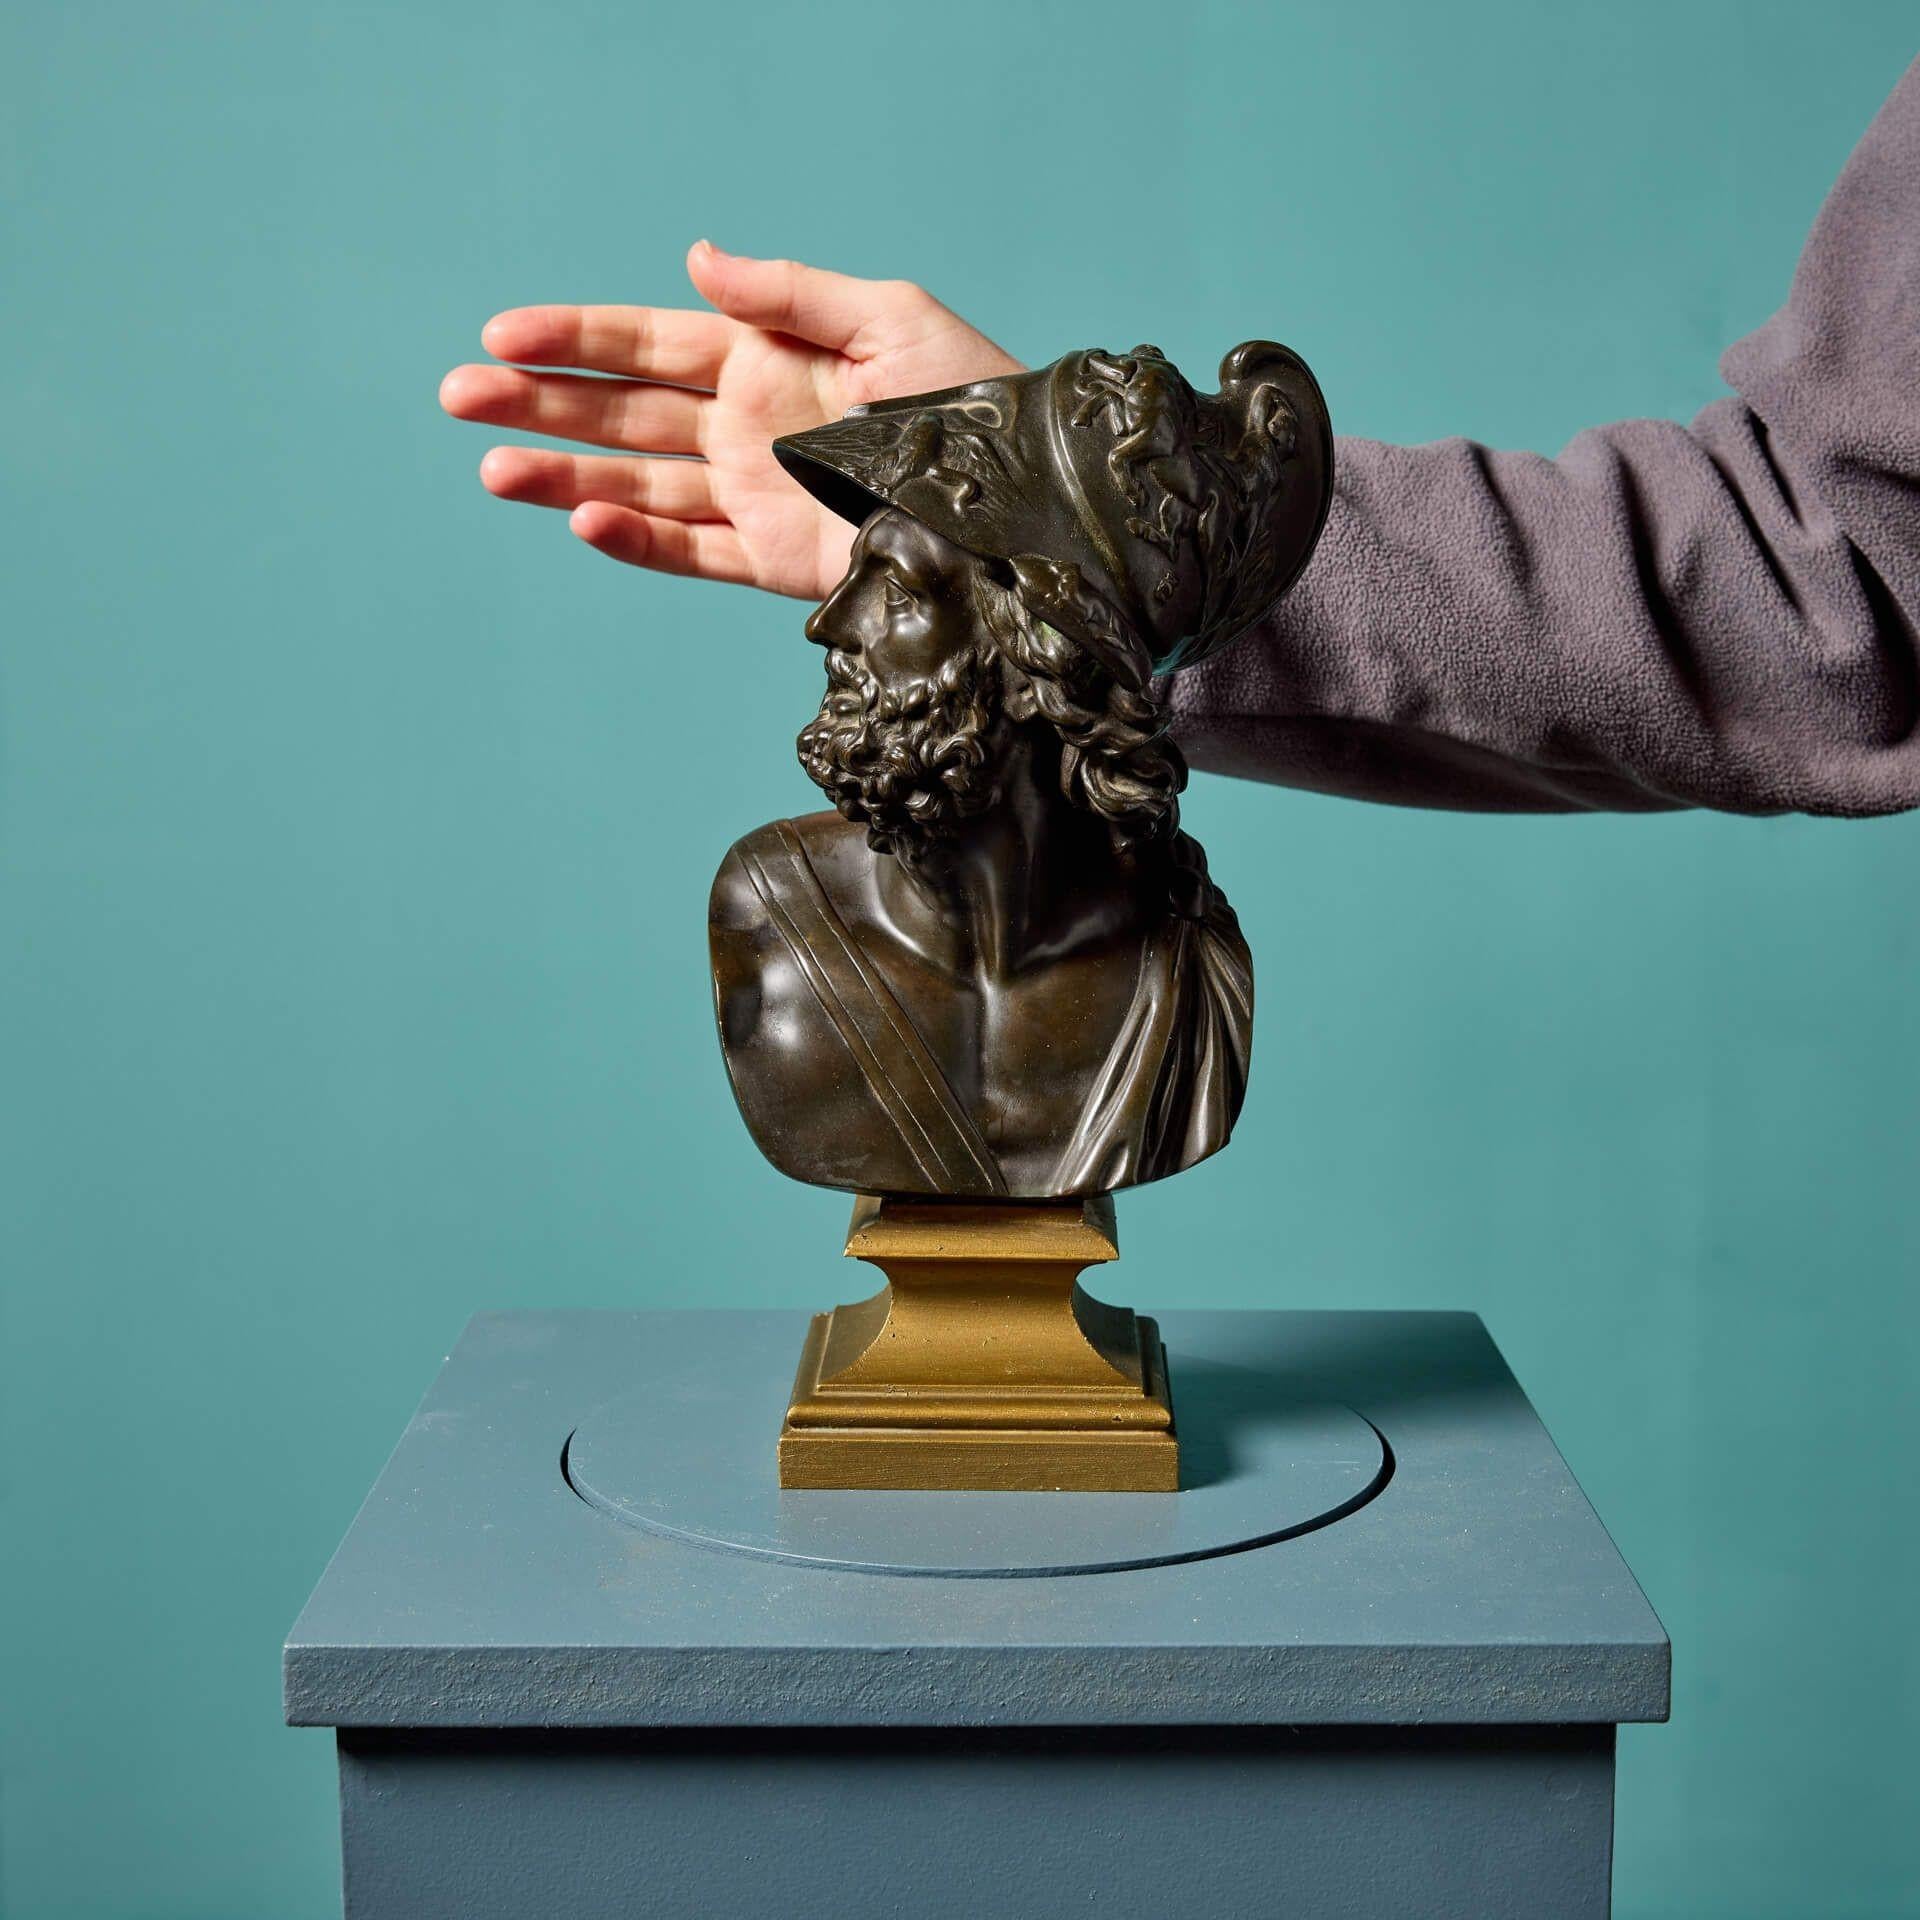 Antike neoklassizistische Bronzebüste des Menelaos nach der Antike. Diese hübsche Skulptur ist nach rechts blickend dargestellt, den Helm über das gewellte Haar und den lockigen Bart erhoben. Menelaos steht auf einem vergoldeten quadratischen Sockel